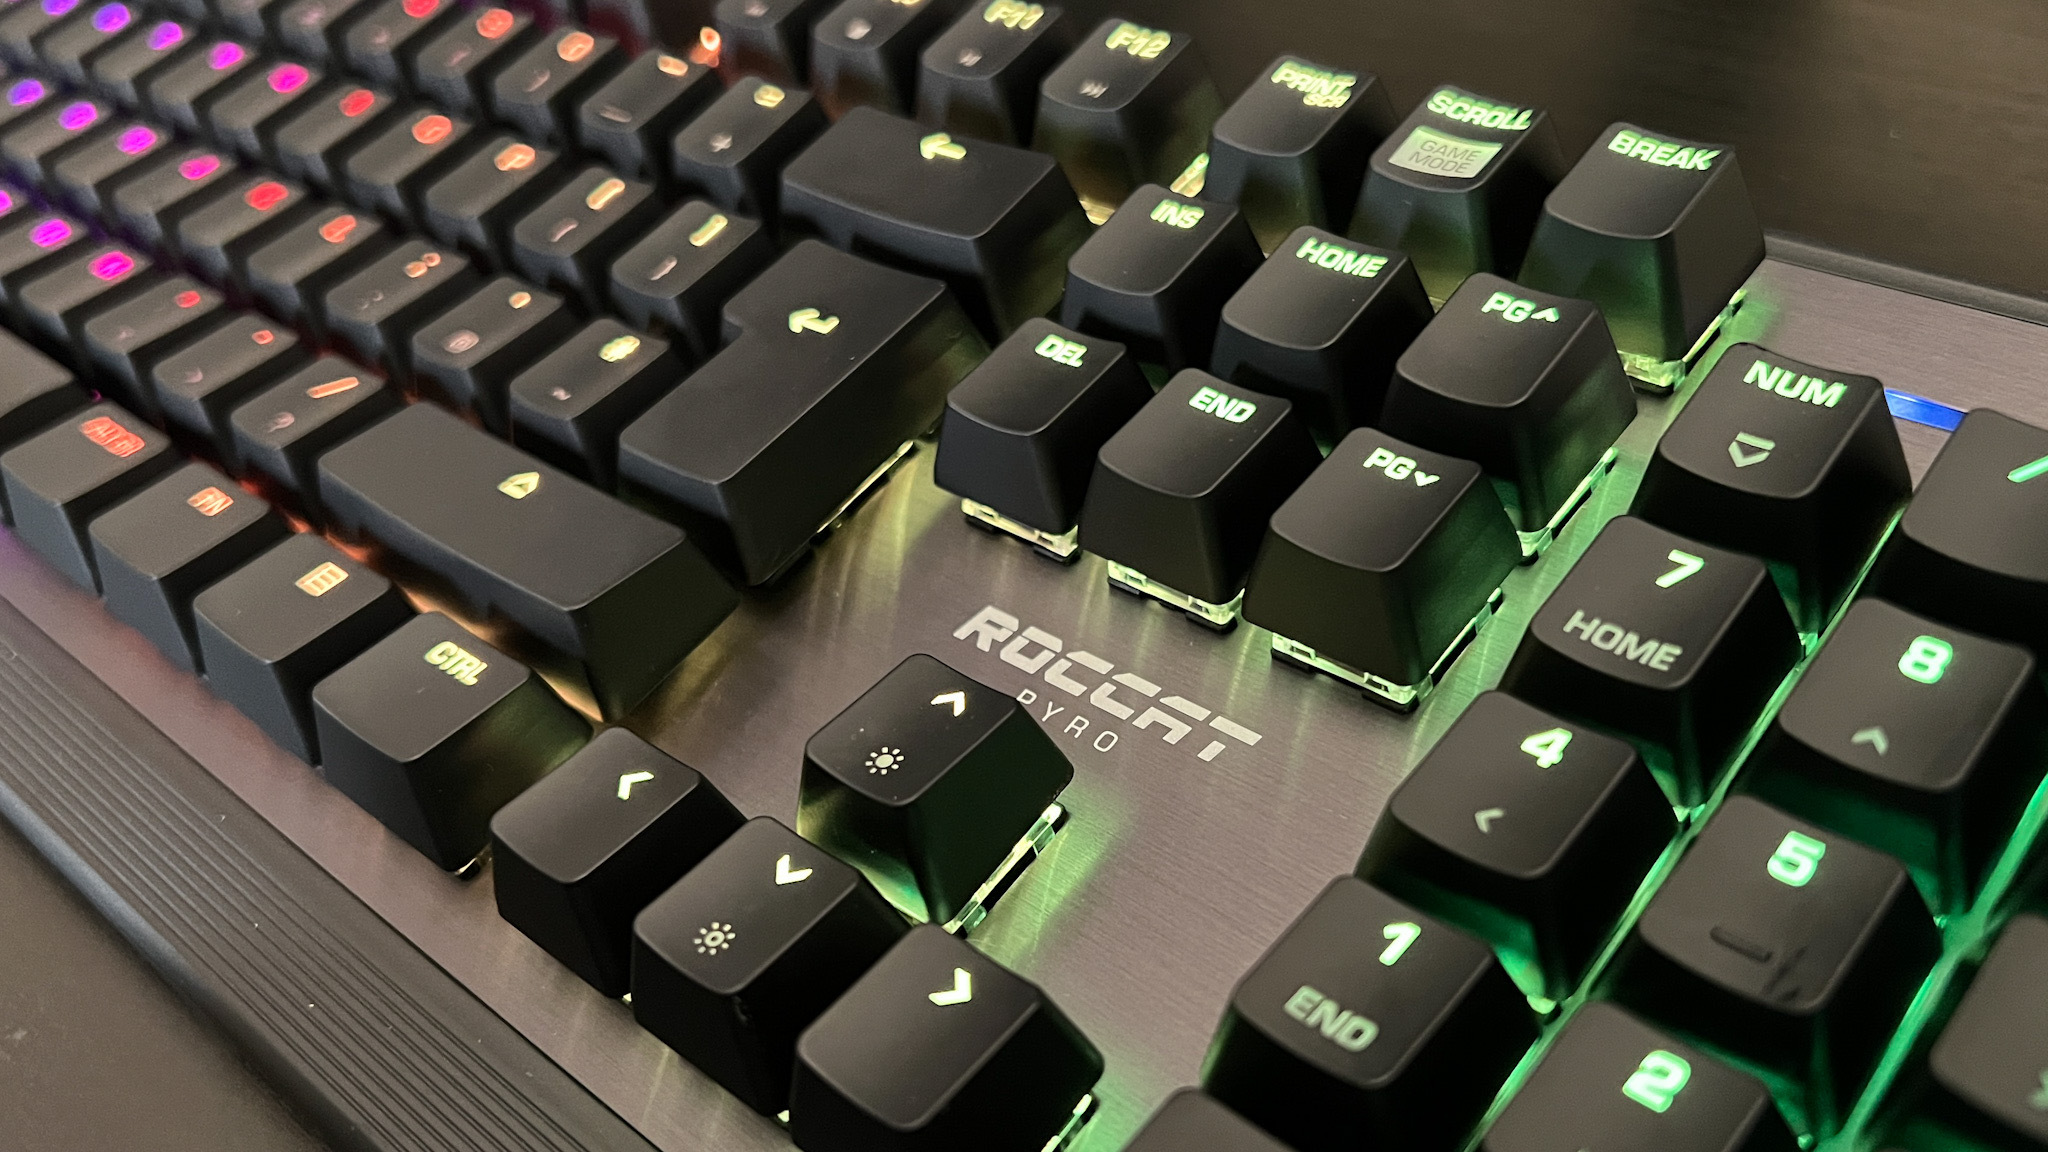 Roccat Pyro gaming keyboard